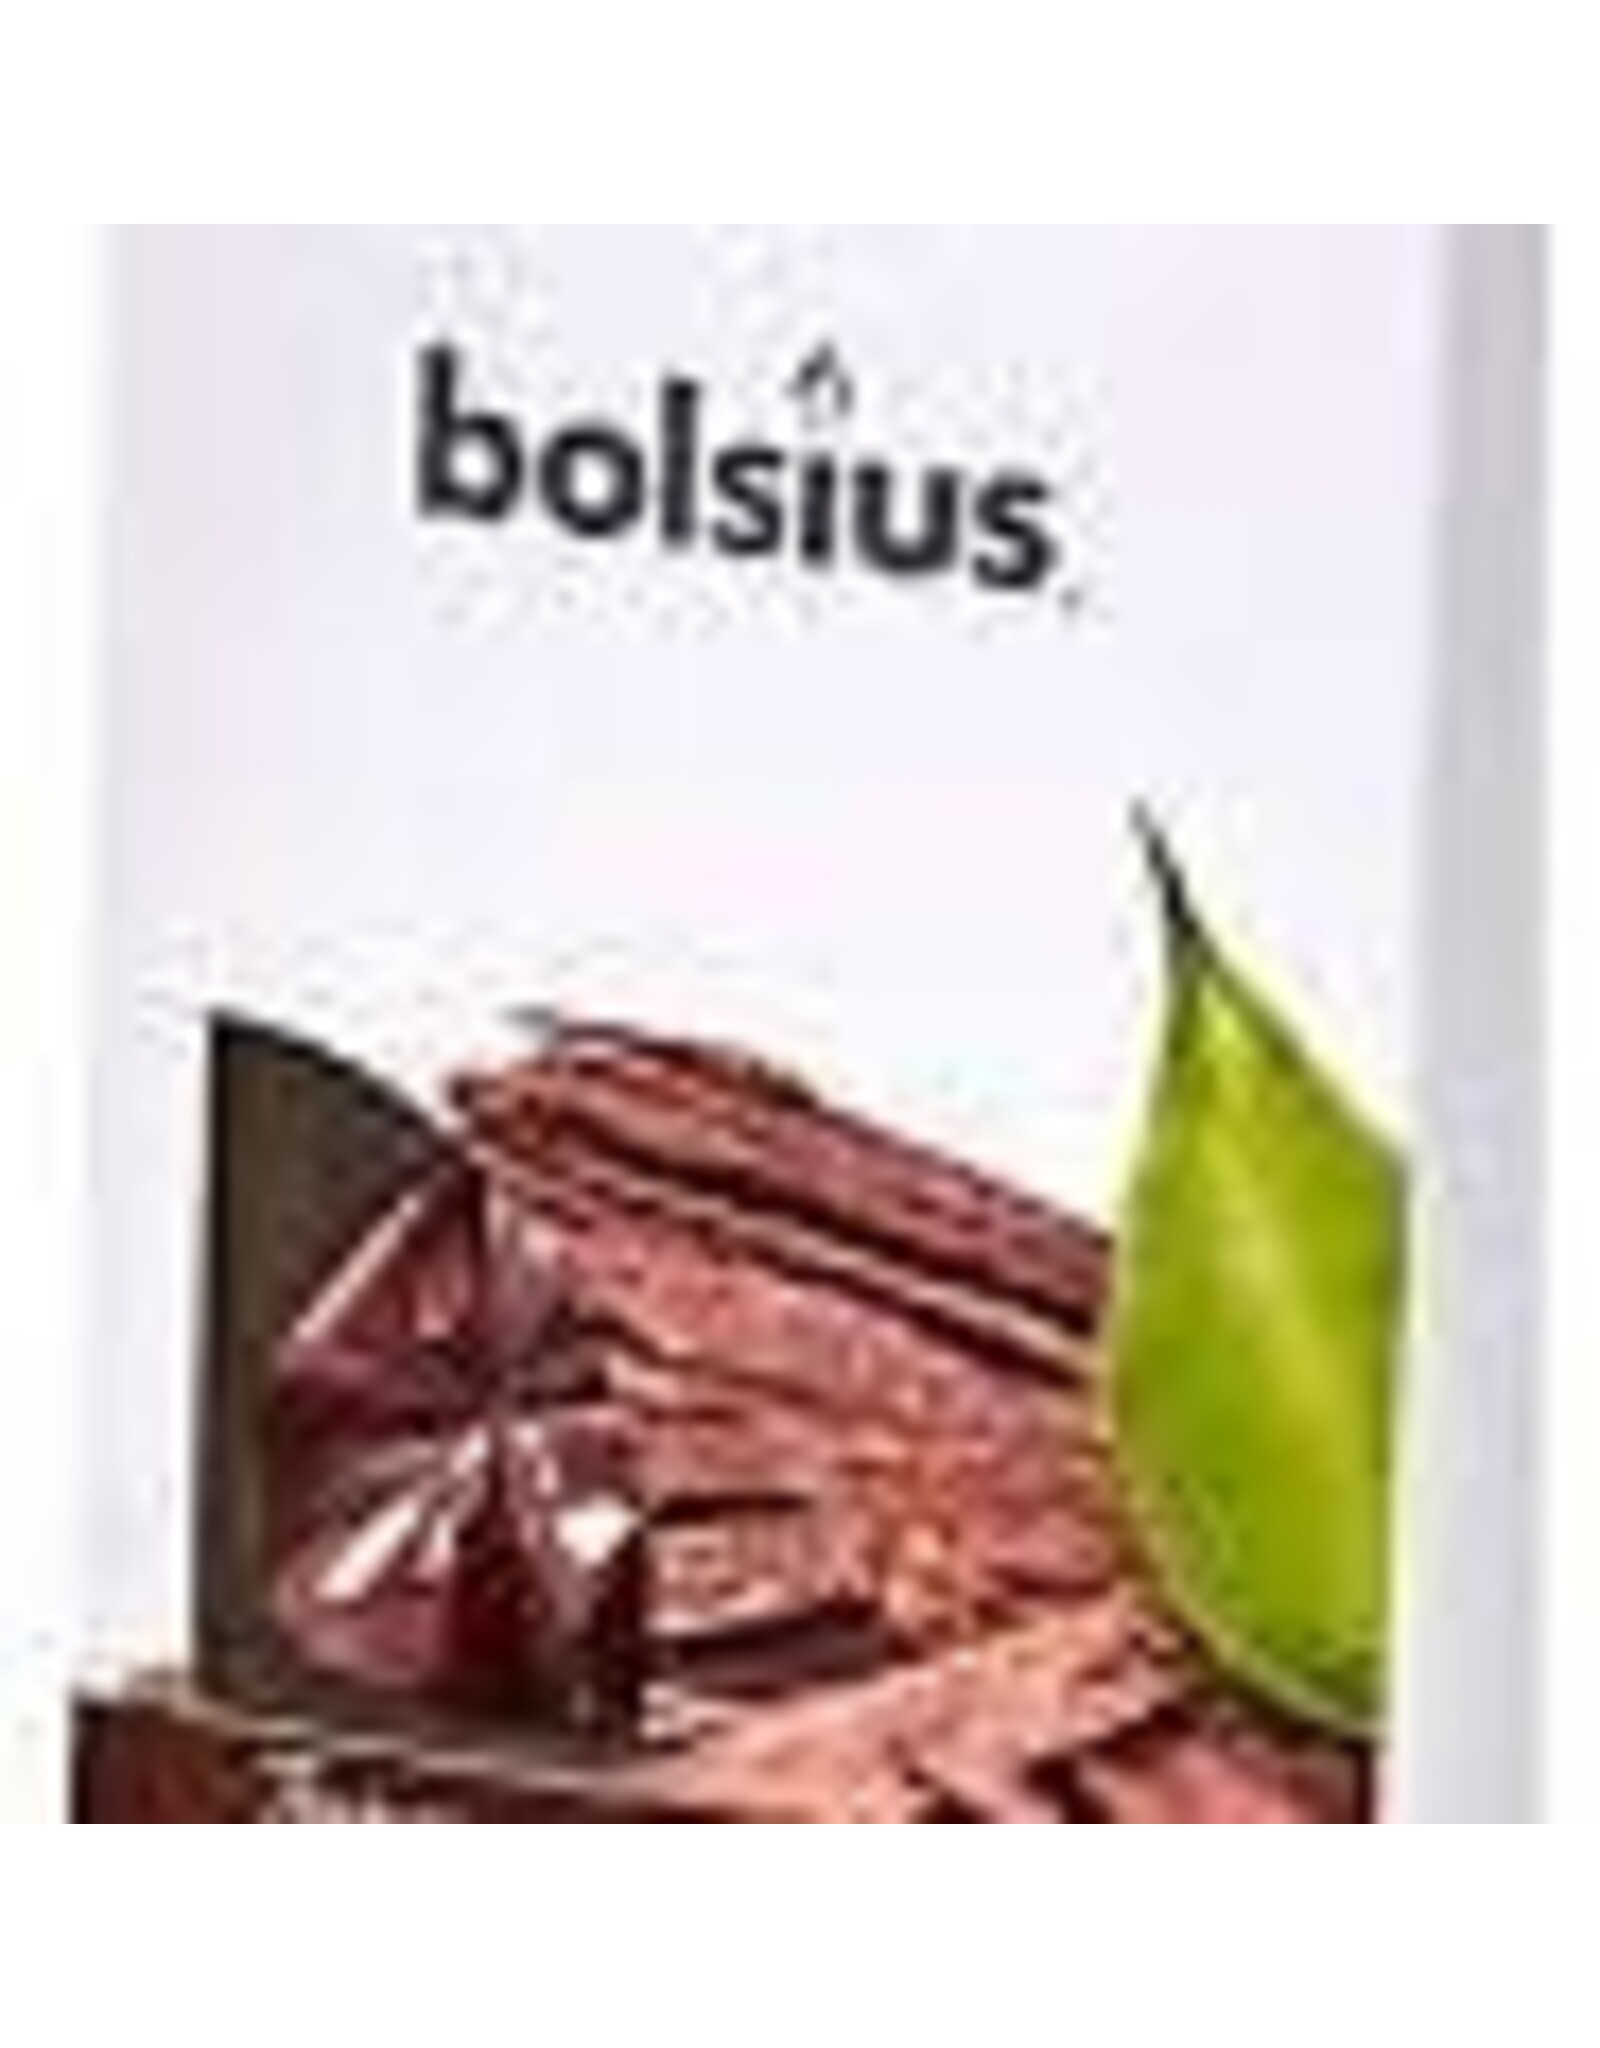 BOLSIUS Bolsius Waxmelts true scents oud wood